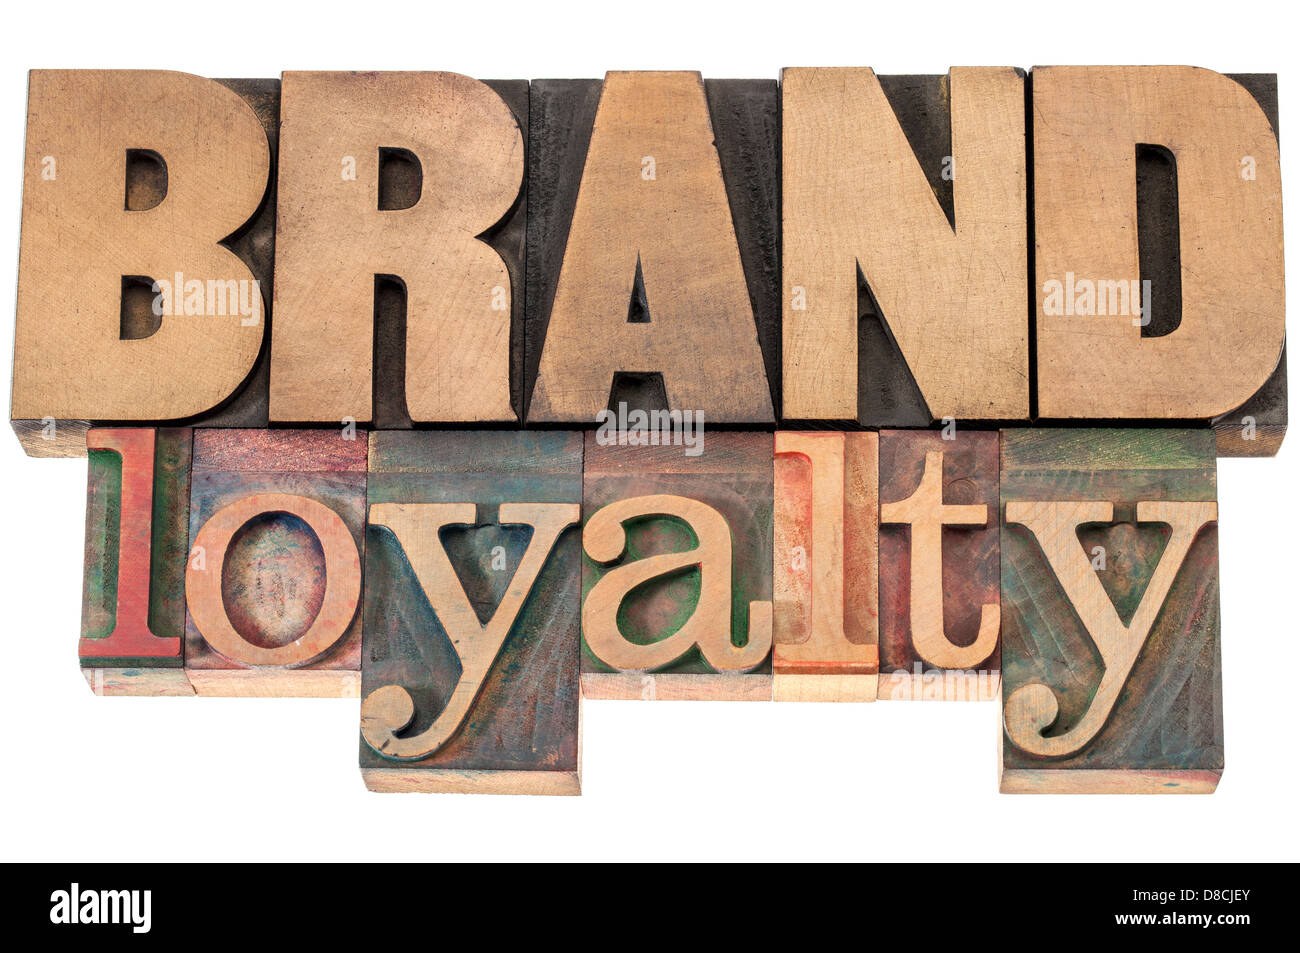 La fedeltà alla marca - concetto di business - testo isolato in rilievografia tipo legno blocchi di stampa Foto Stock